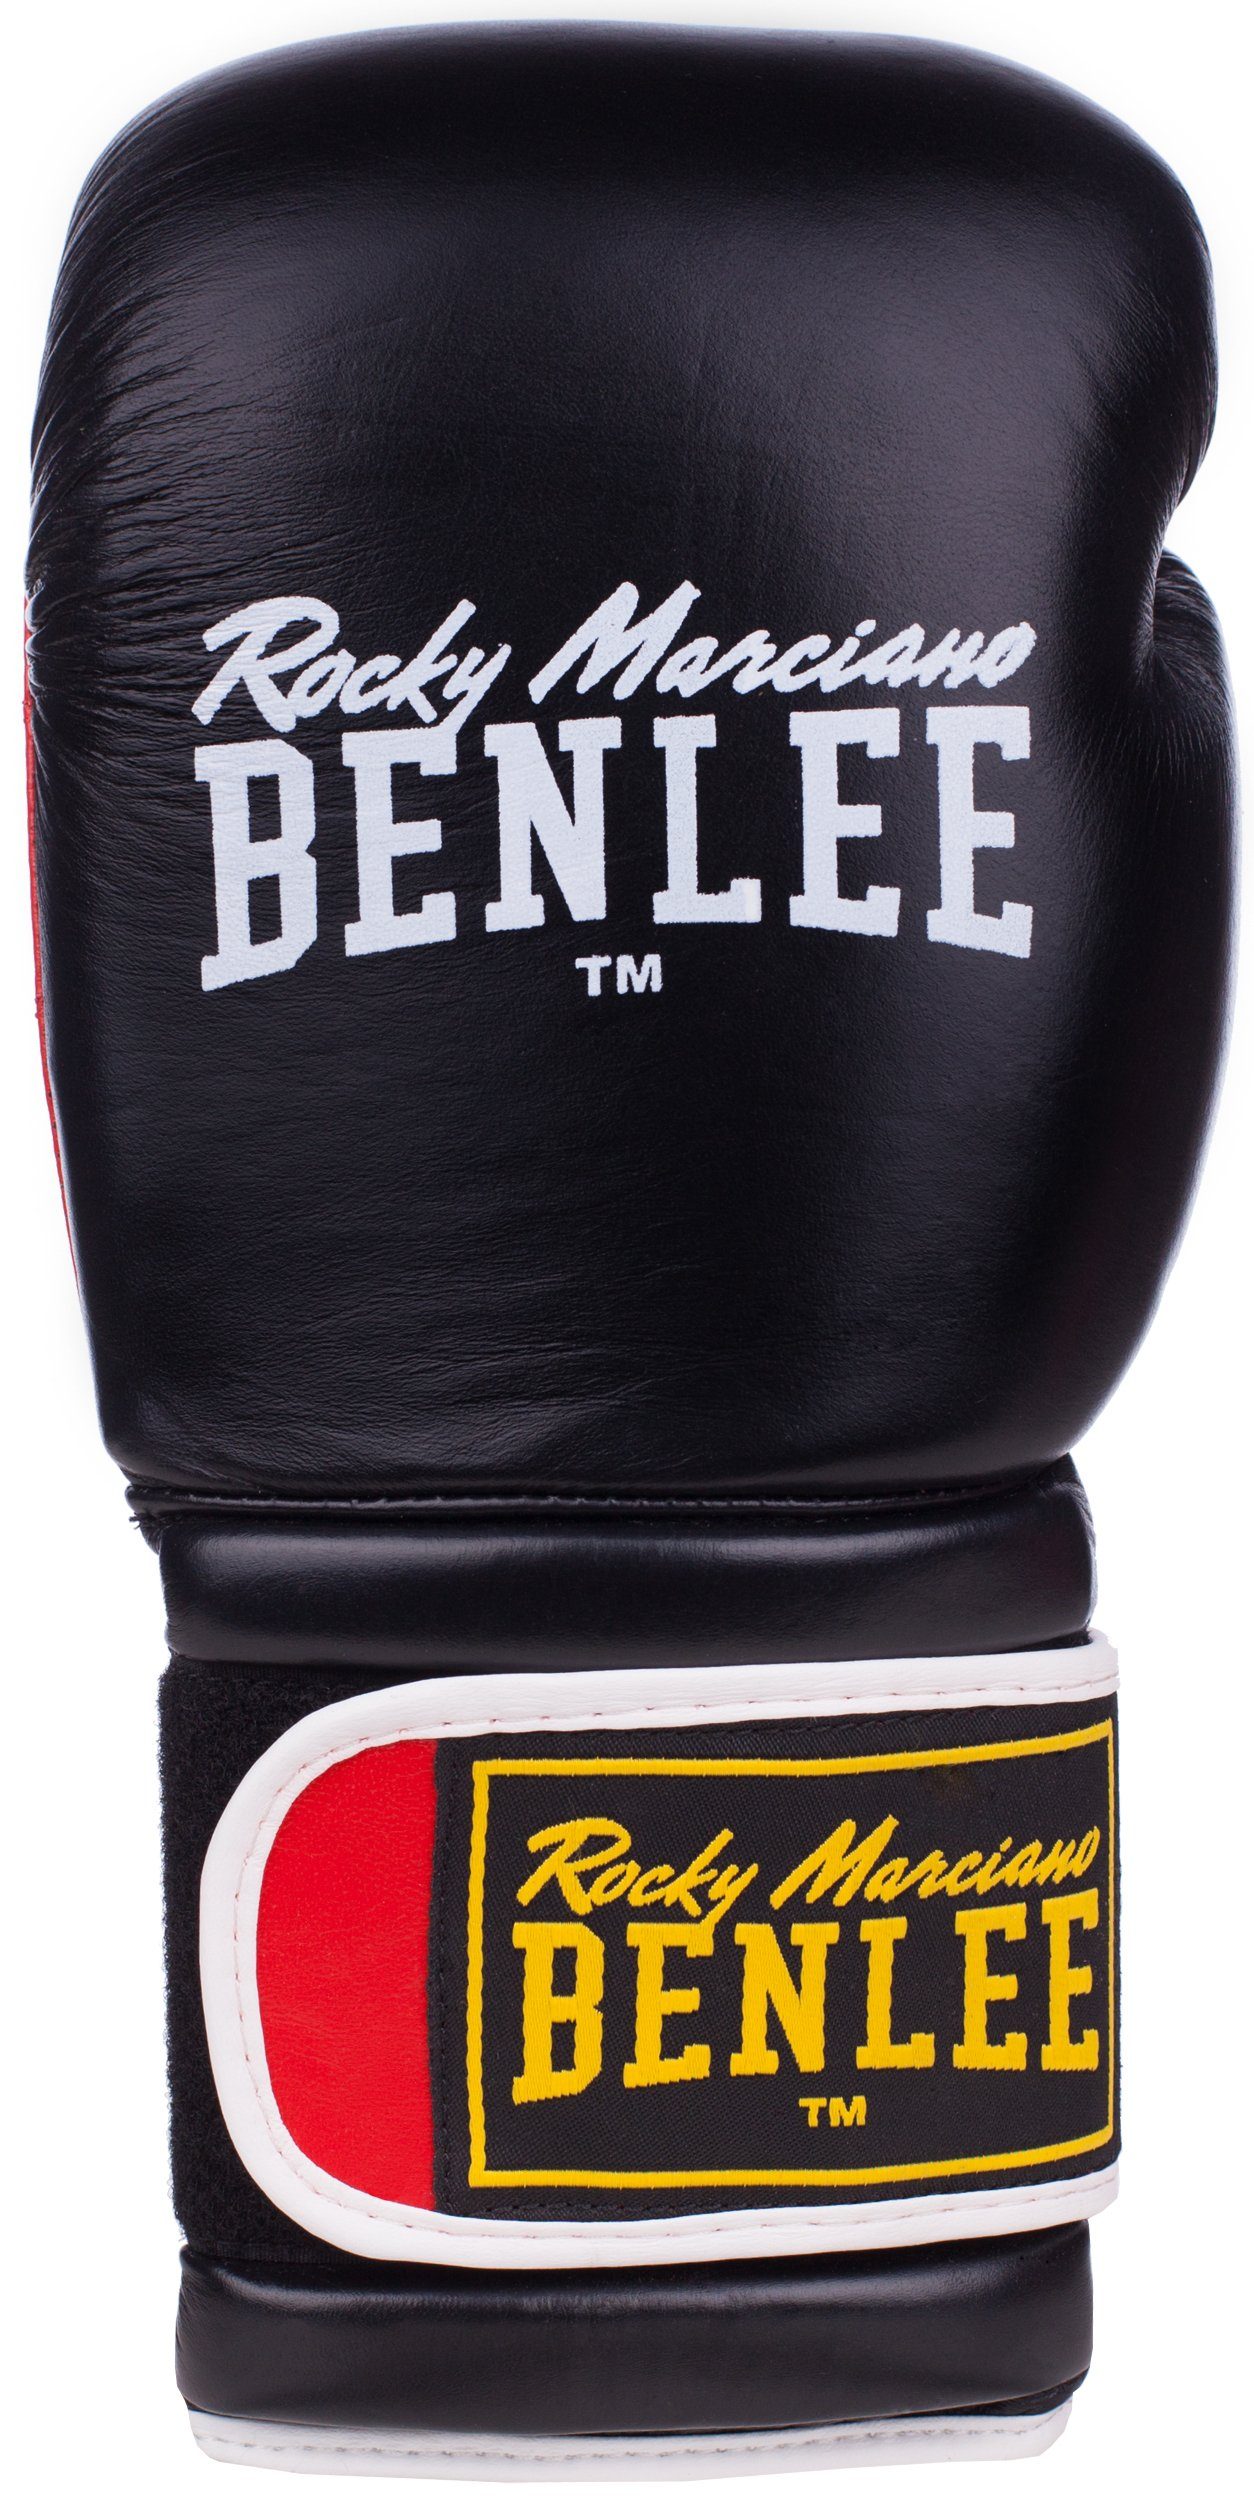 [Die neuesten Artikel im Ausland kaufen] Benlee Rocky Marciano SUGAR Boxhandschuhe Black/Red DELUXE